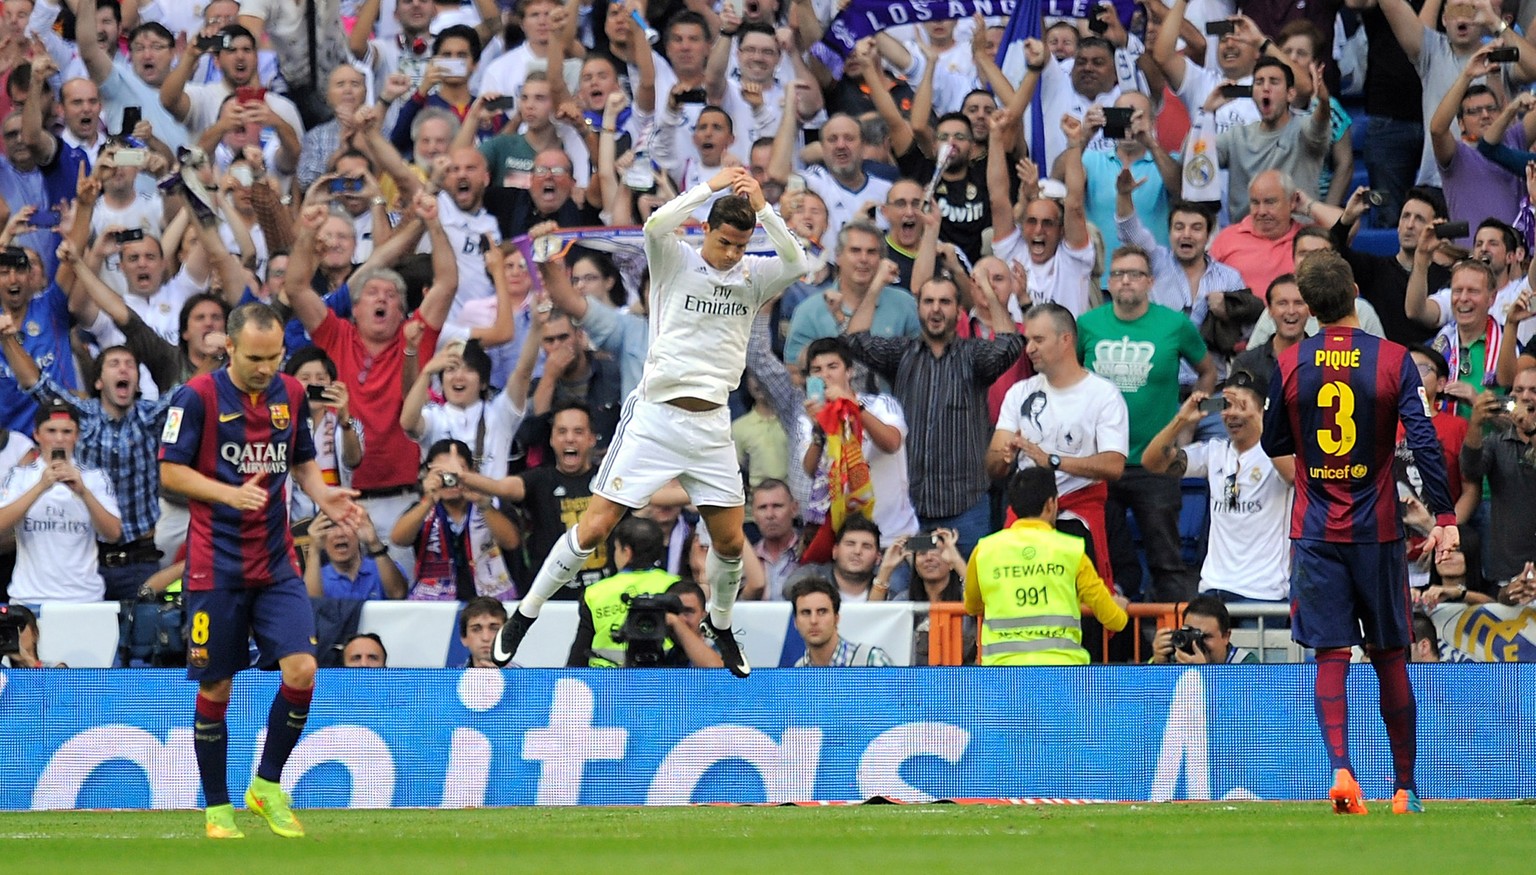 Ronaldo lässt sich feiern, während Iniesta und Piqué enttäuscht abdrehen.